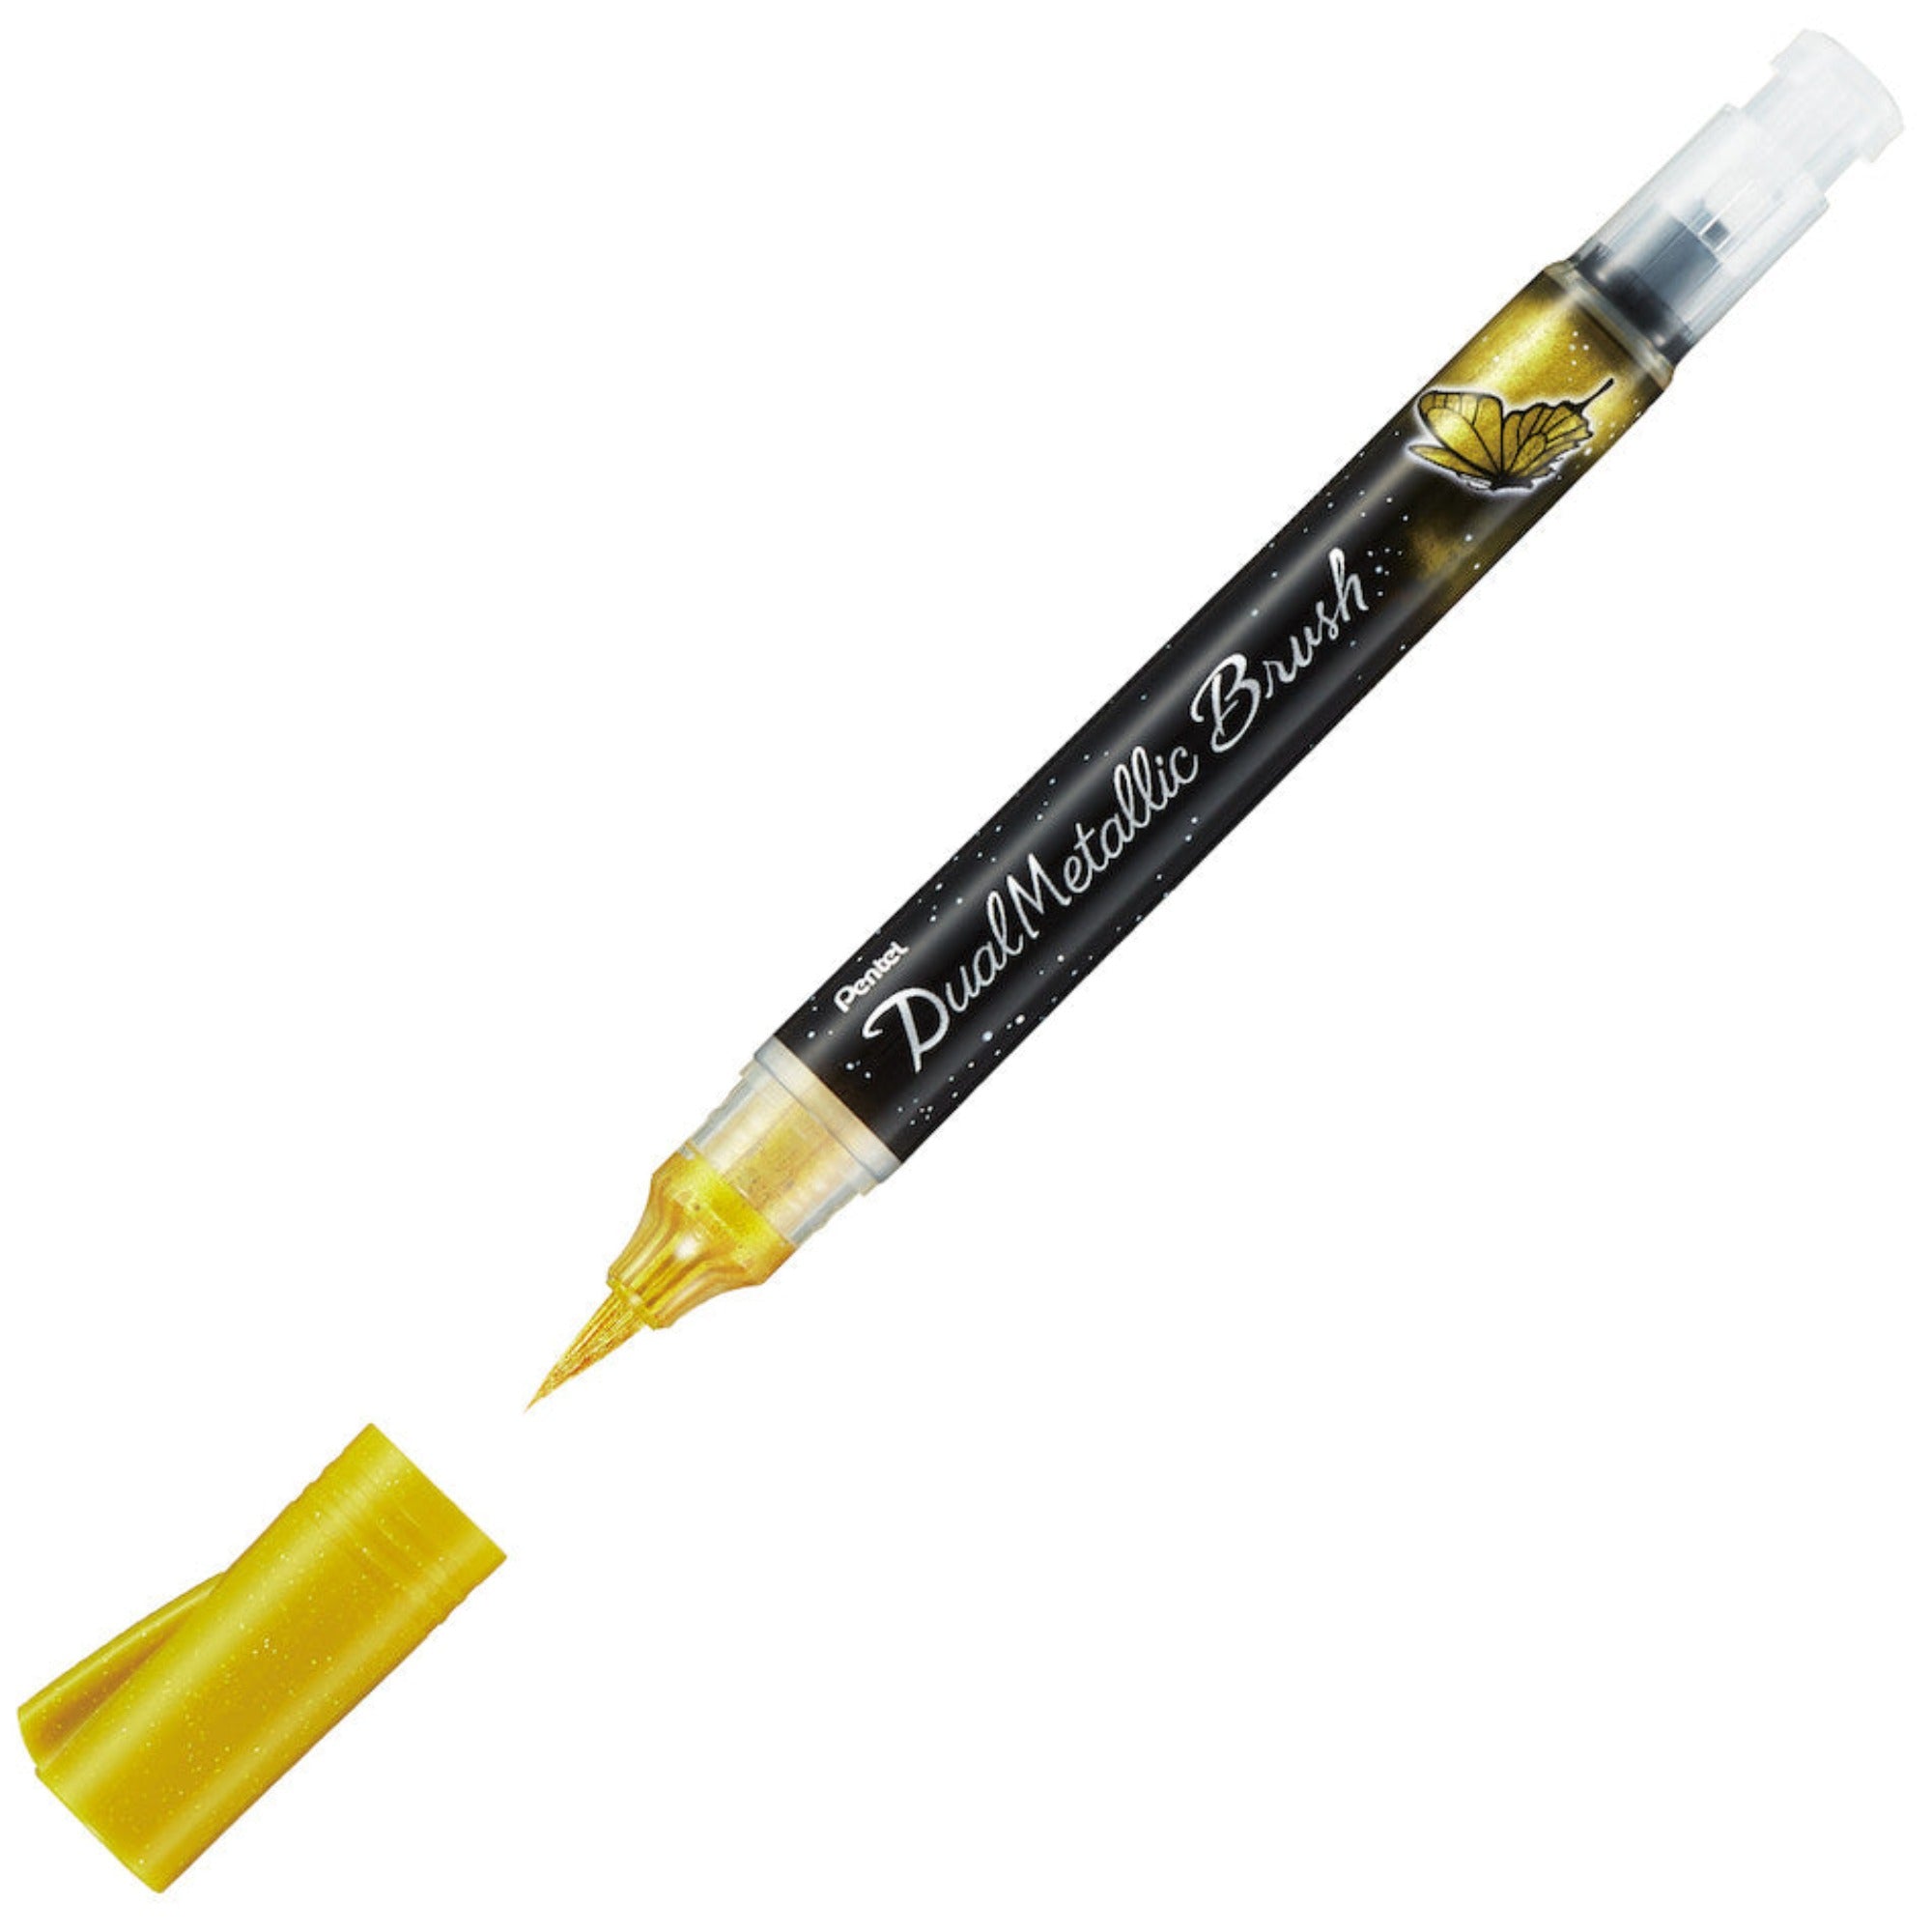 Pentel Arts Dual Metallic Brush Pens - Metallic Gold